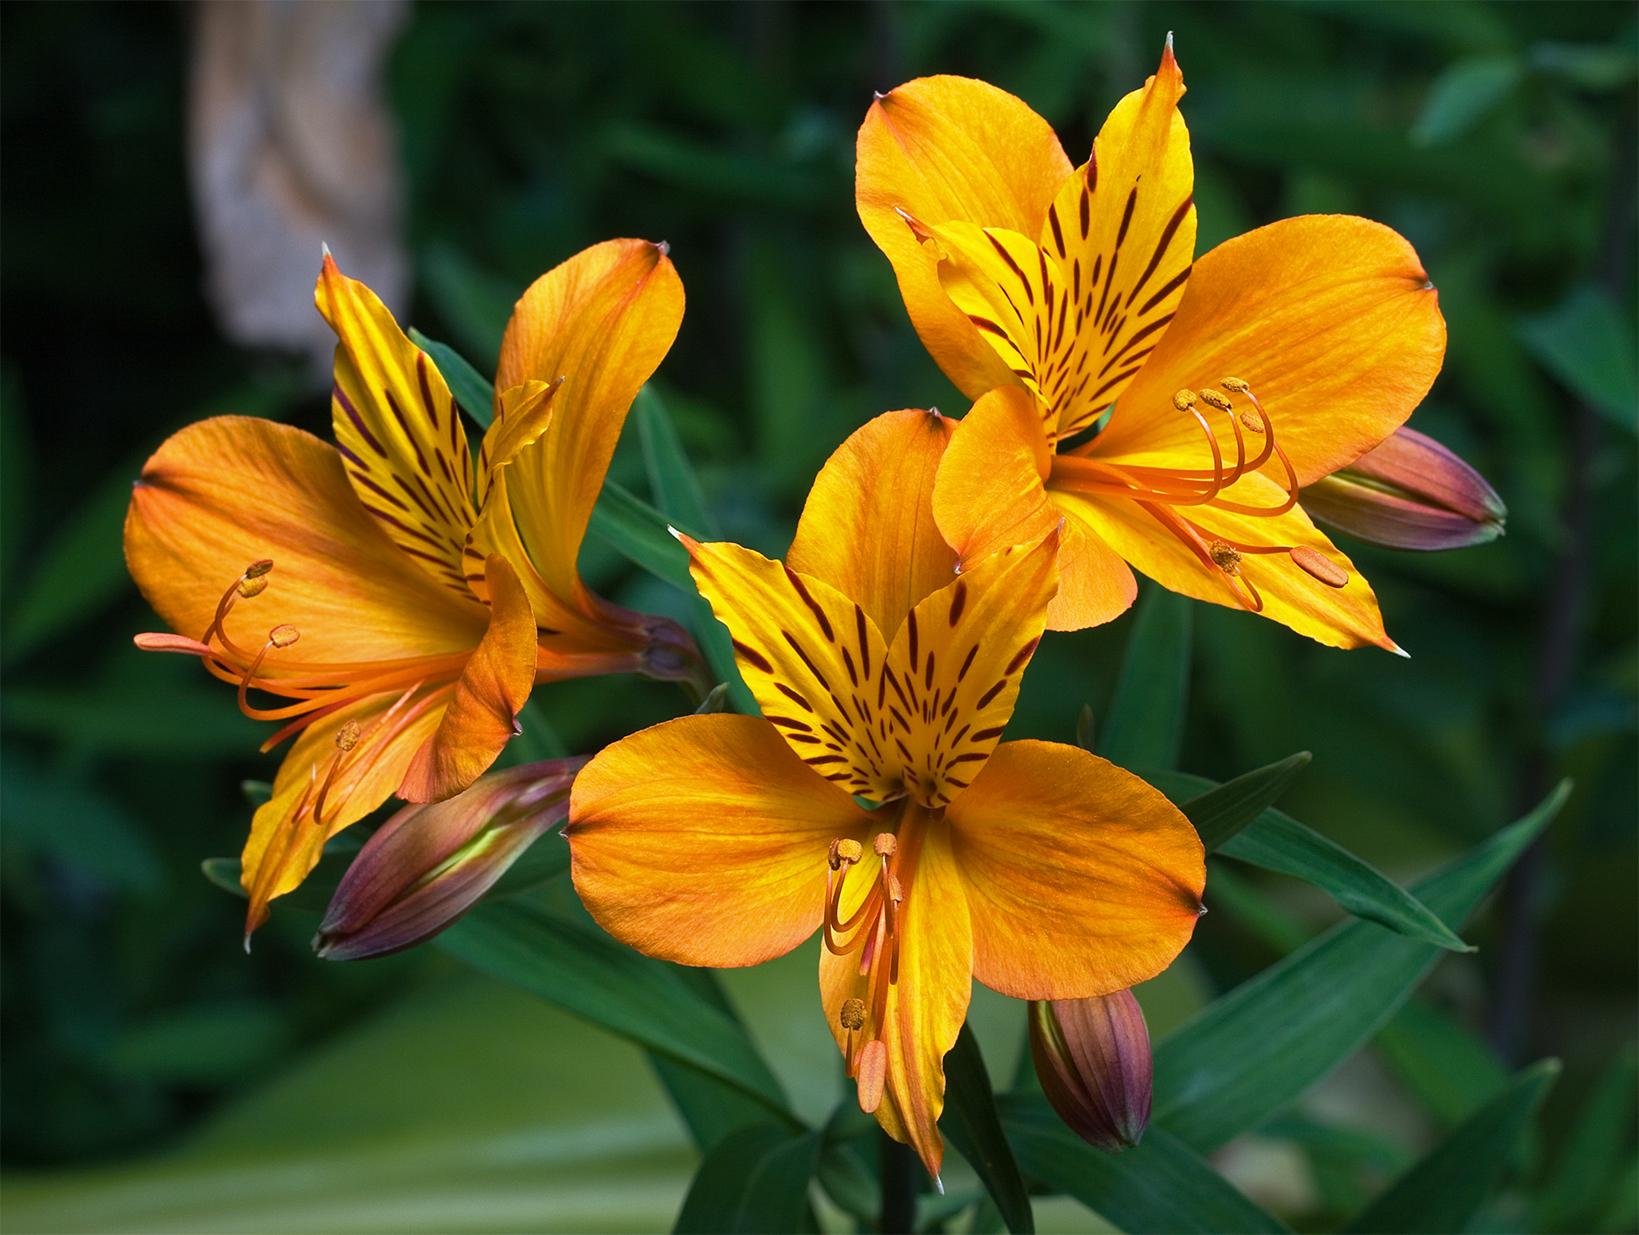 Como plantar e cuidar de astromélias; aprenda mais sobre essa flor deslumbrante